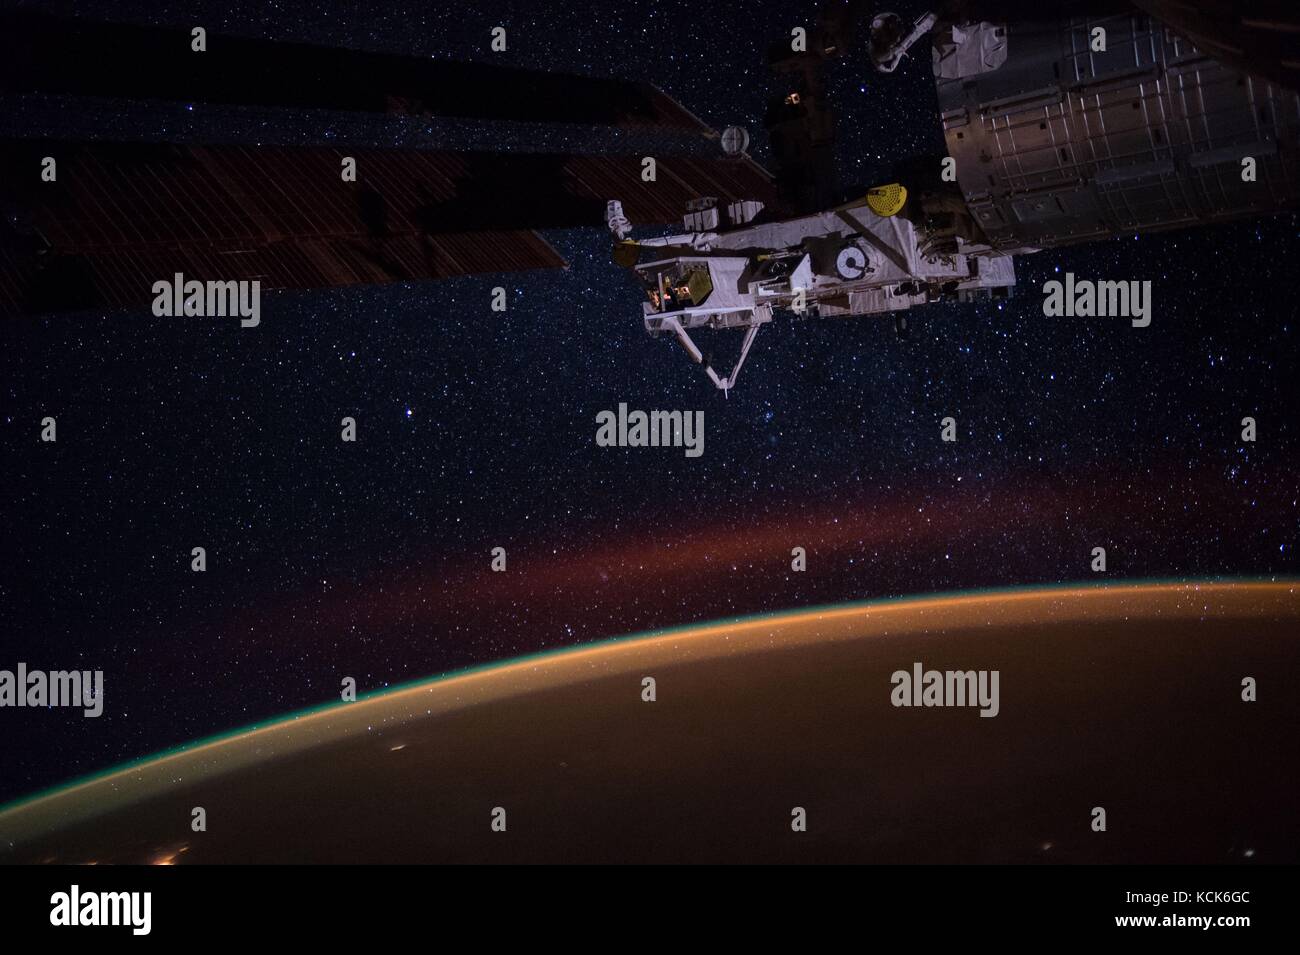 Die NASA ISS Expedition 49 crew Astronauten fangen die Atmosphäre der Erde, die Sterne in der Milchstraße, und eine Anlage an Bord des japanischen Moduls kibo Labor in der Nacht Oktober 8, 2016 in der Erdumlaufbahn. (Foto: Nasa Foto über planetpix) Stockfoto